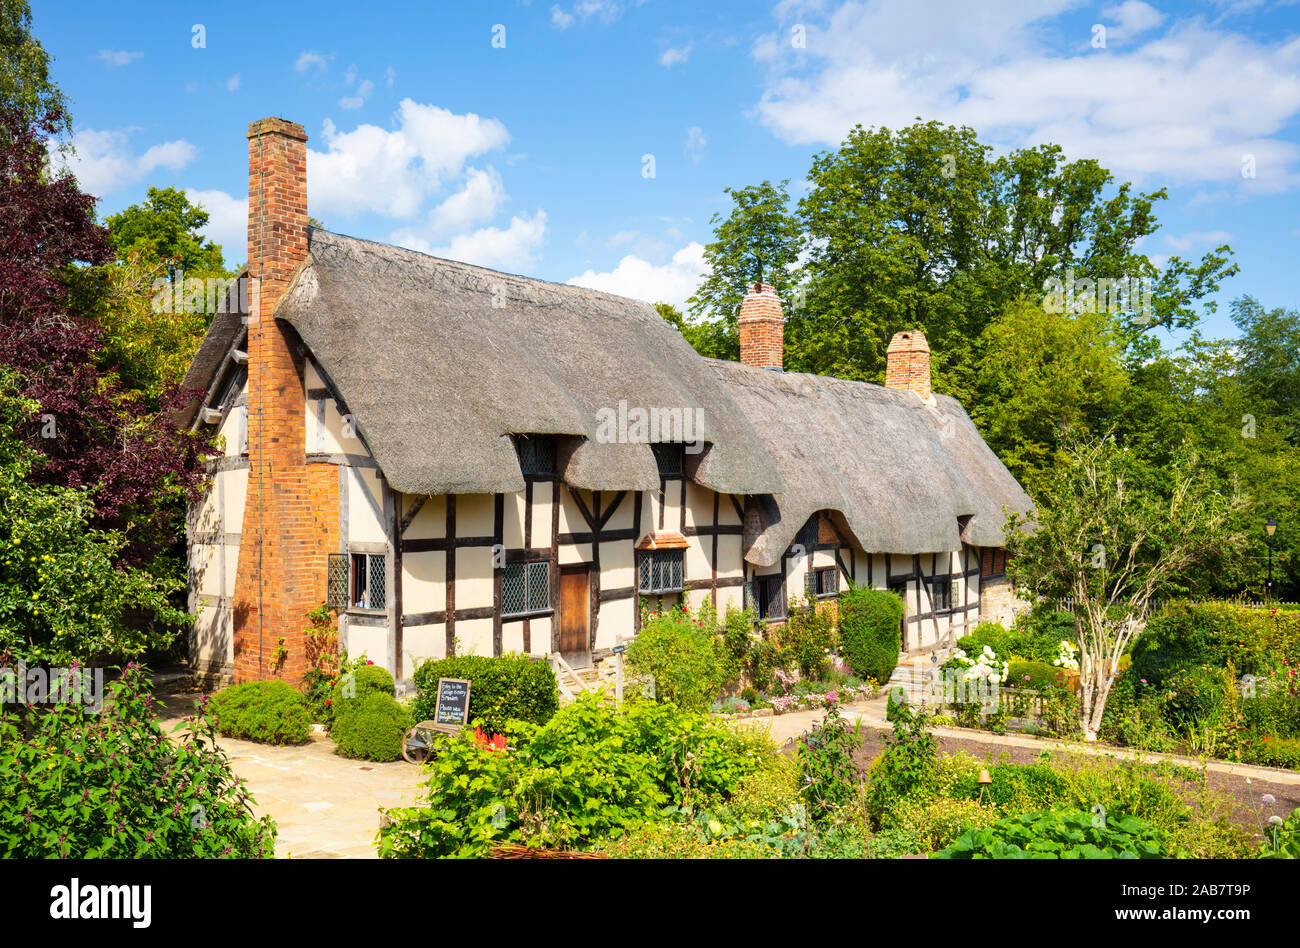 Anne Hathaway's Cottage, une chaumière dans un chalet jardin, Shottery, près de Stratford Upon Avon, Warwickshire, Angleterre, Royaume-Uni, Europe Banque D'Images